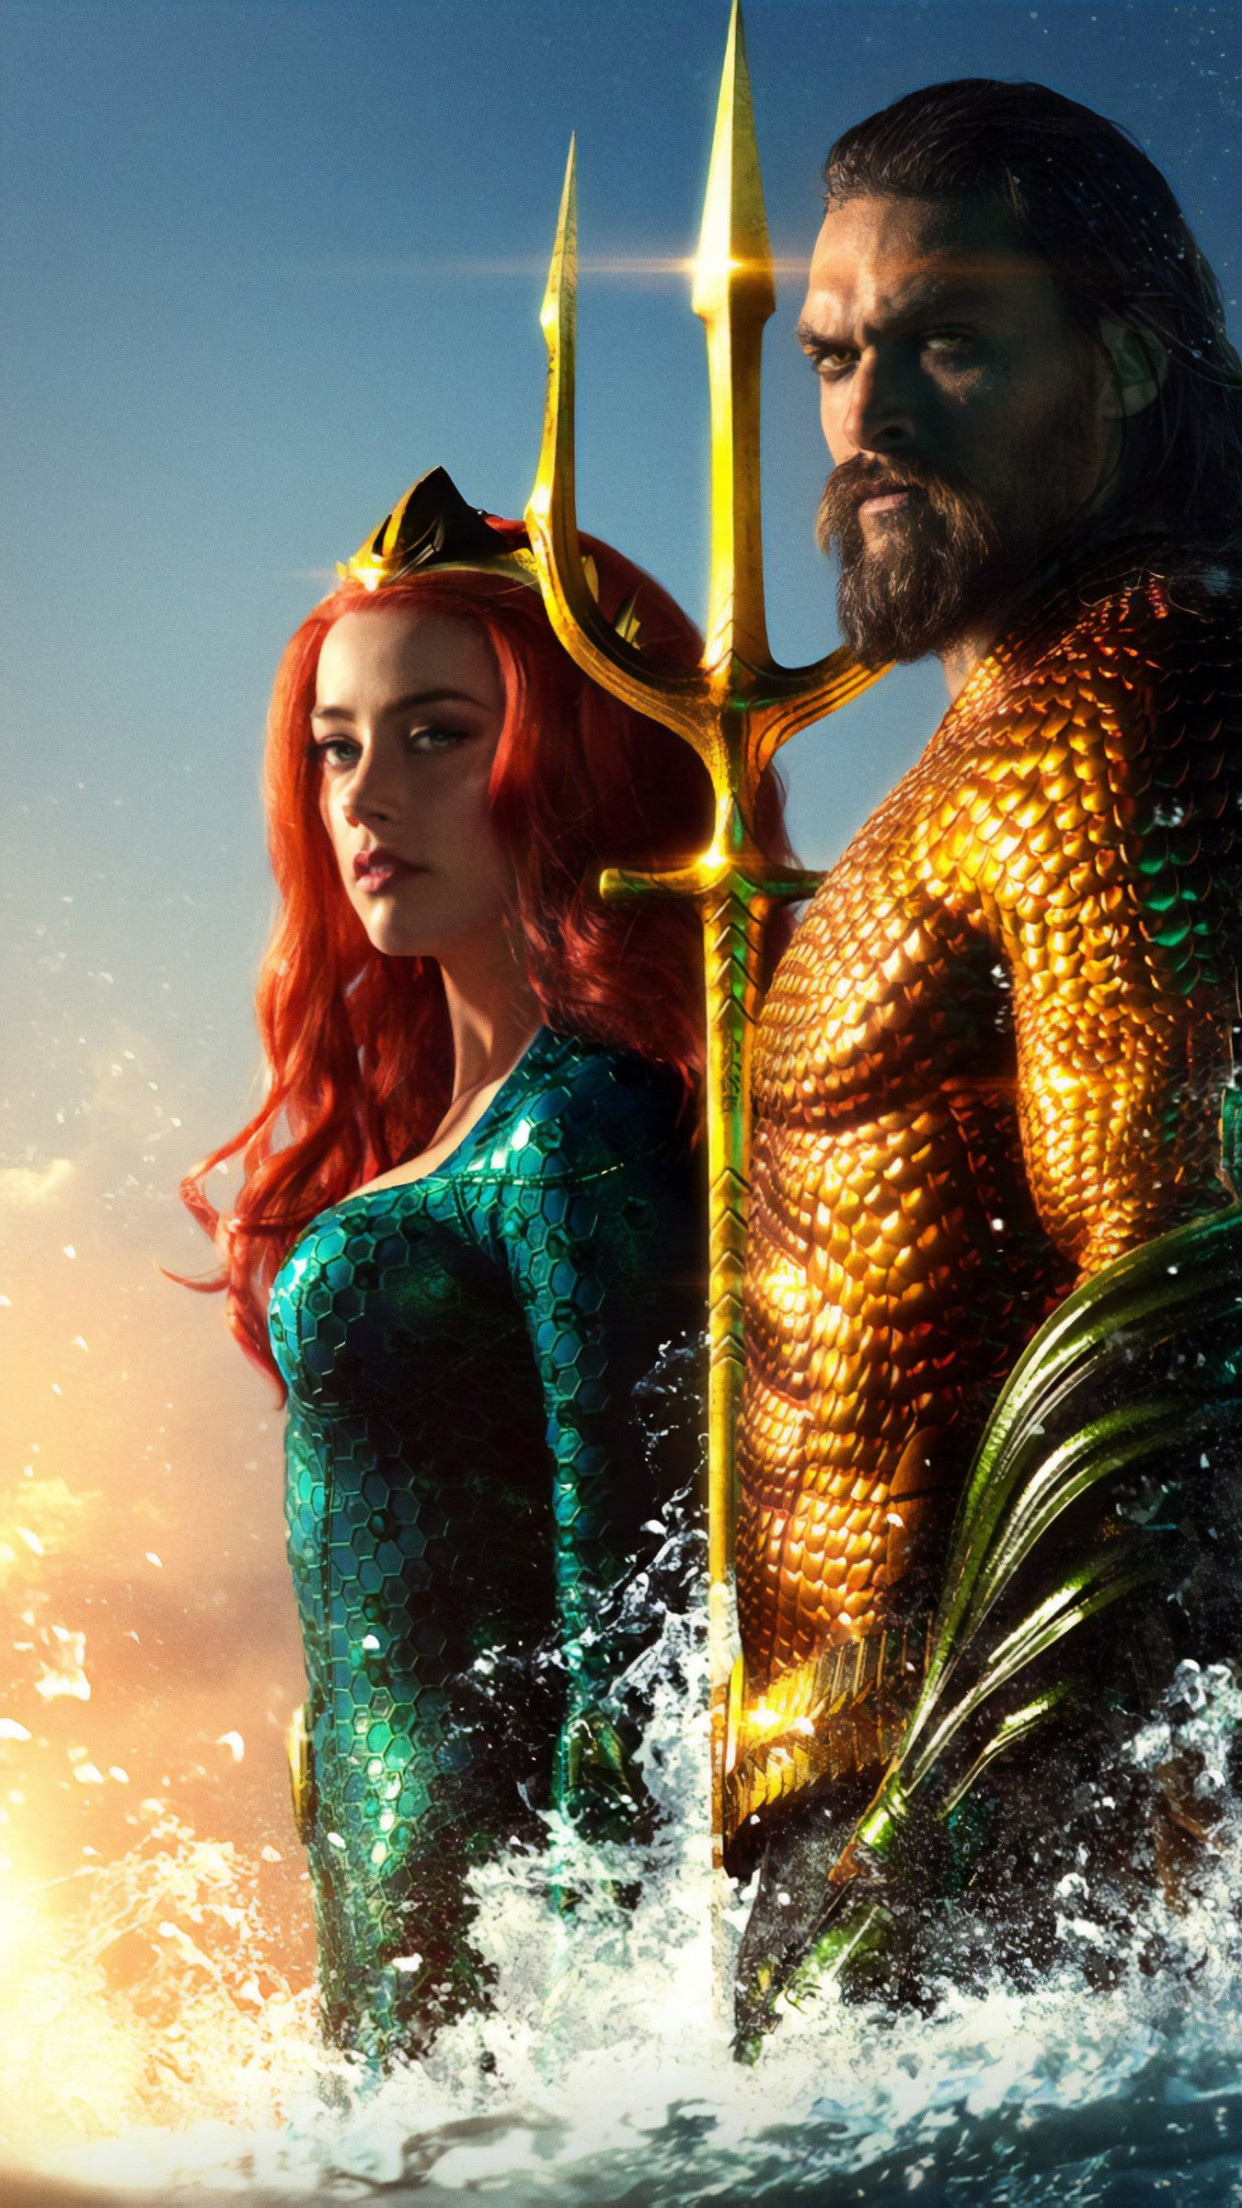 Download wallpaper: Aquaman new poster 1242x2208